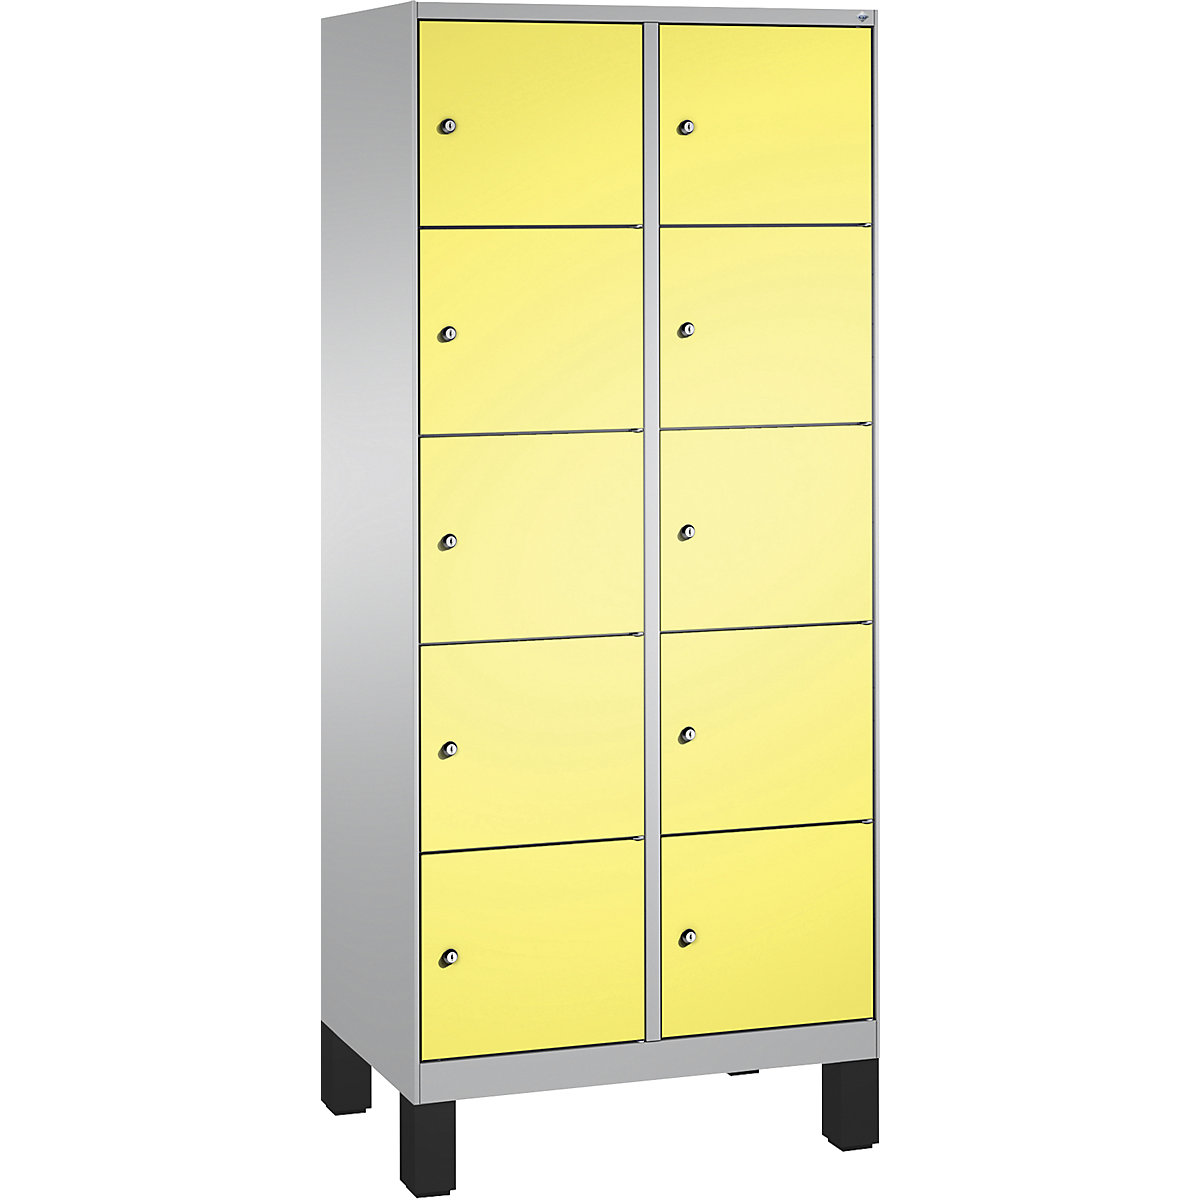 Armoire à casiers sur pieds EVOLO – C+P, 2 compartiments, 5 casiers chacun, largeur compartiments 400 mm, aluminium / jaune soufre-5